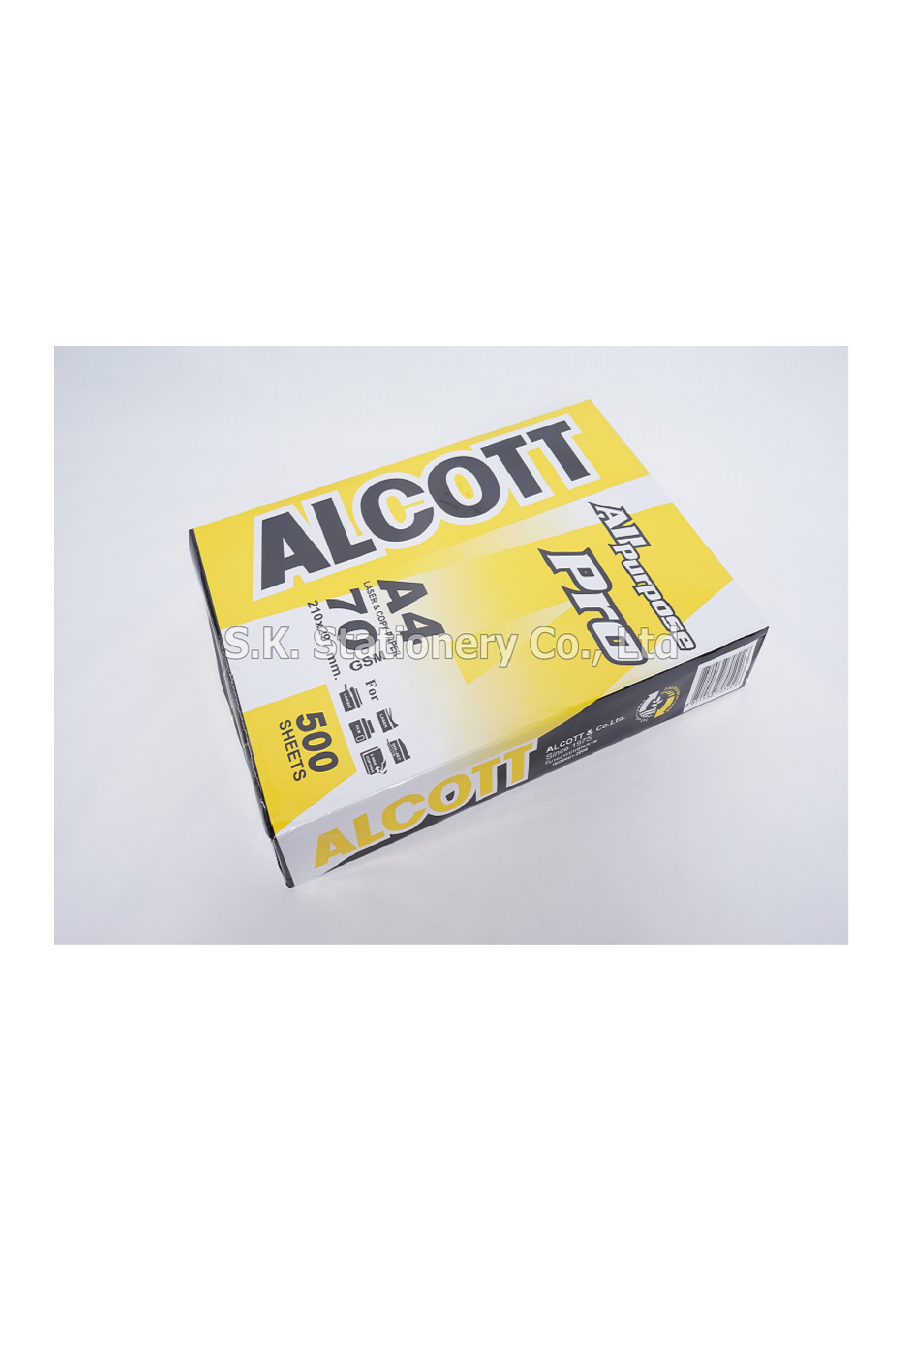 กระดาษถ่ายเอกสาร 70g A4 ALCOTT (เหลือง)